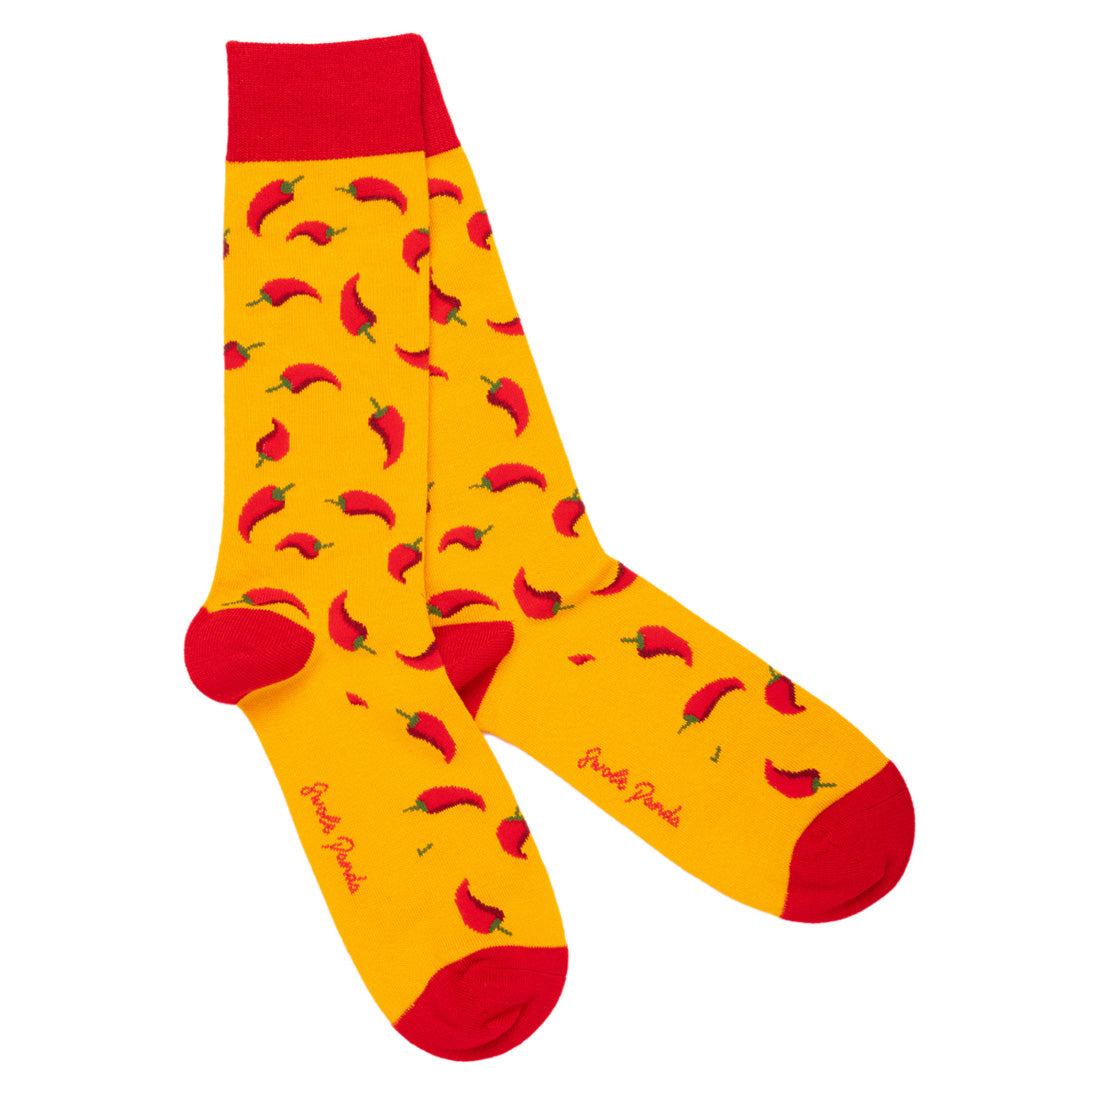 socks-red-chilli-pepper-bamboo-socks-1.jpg